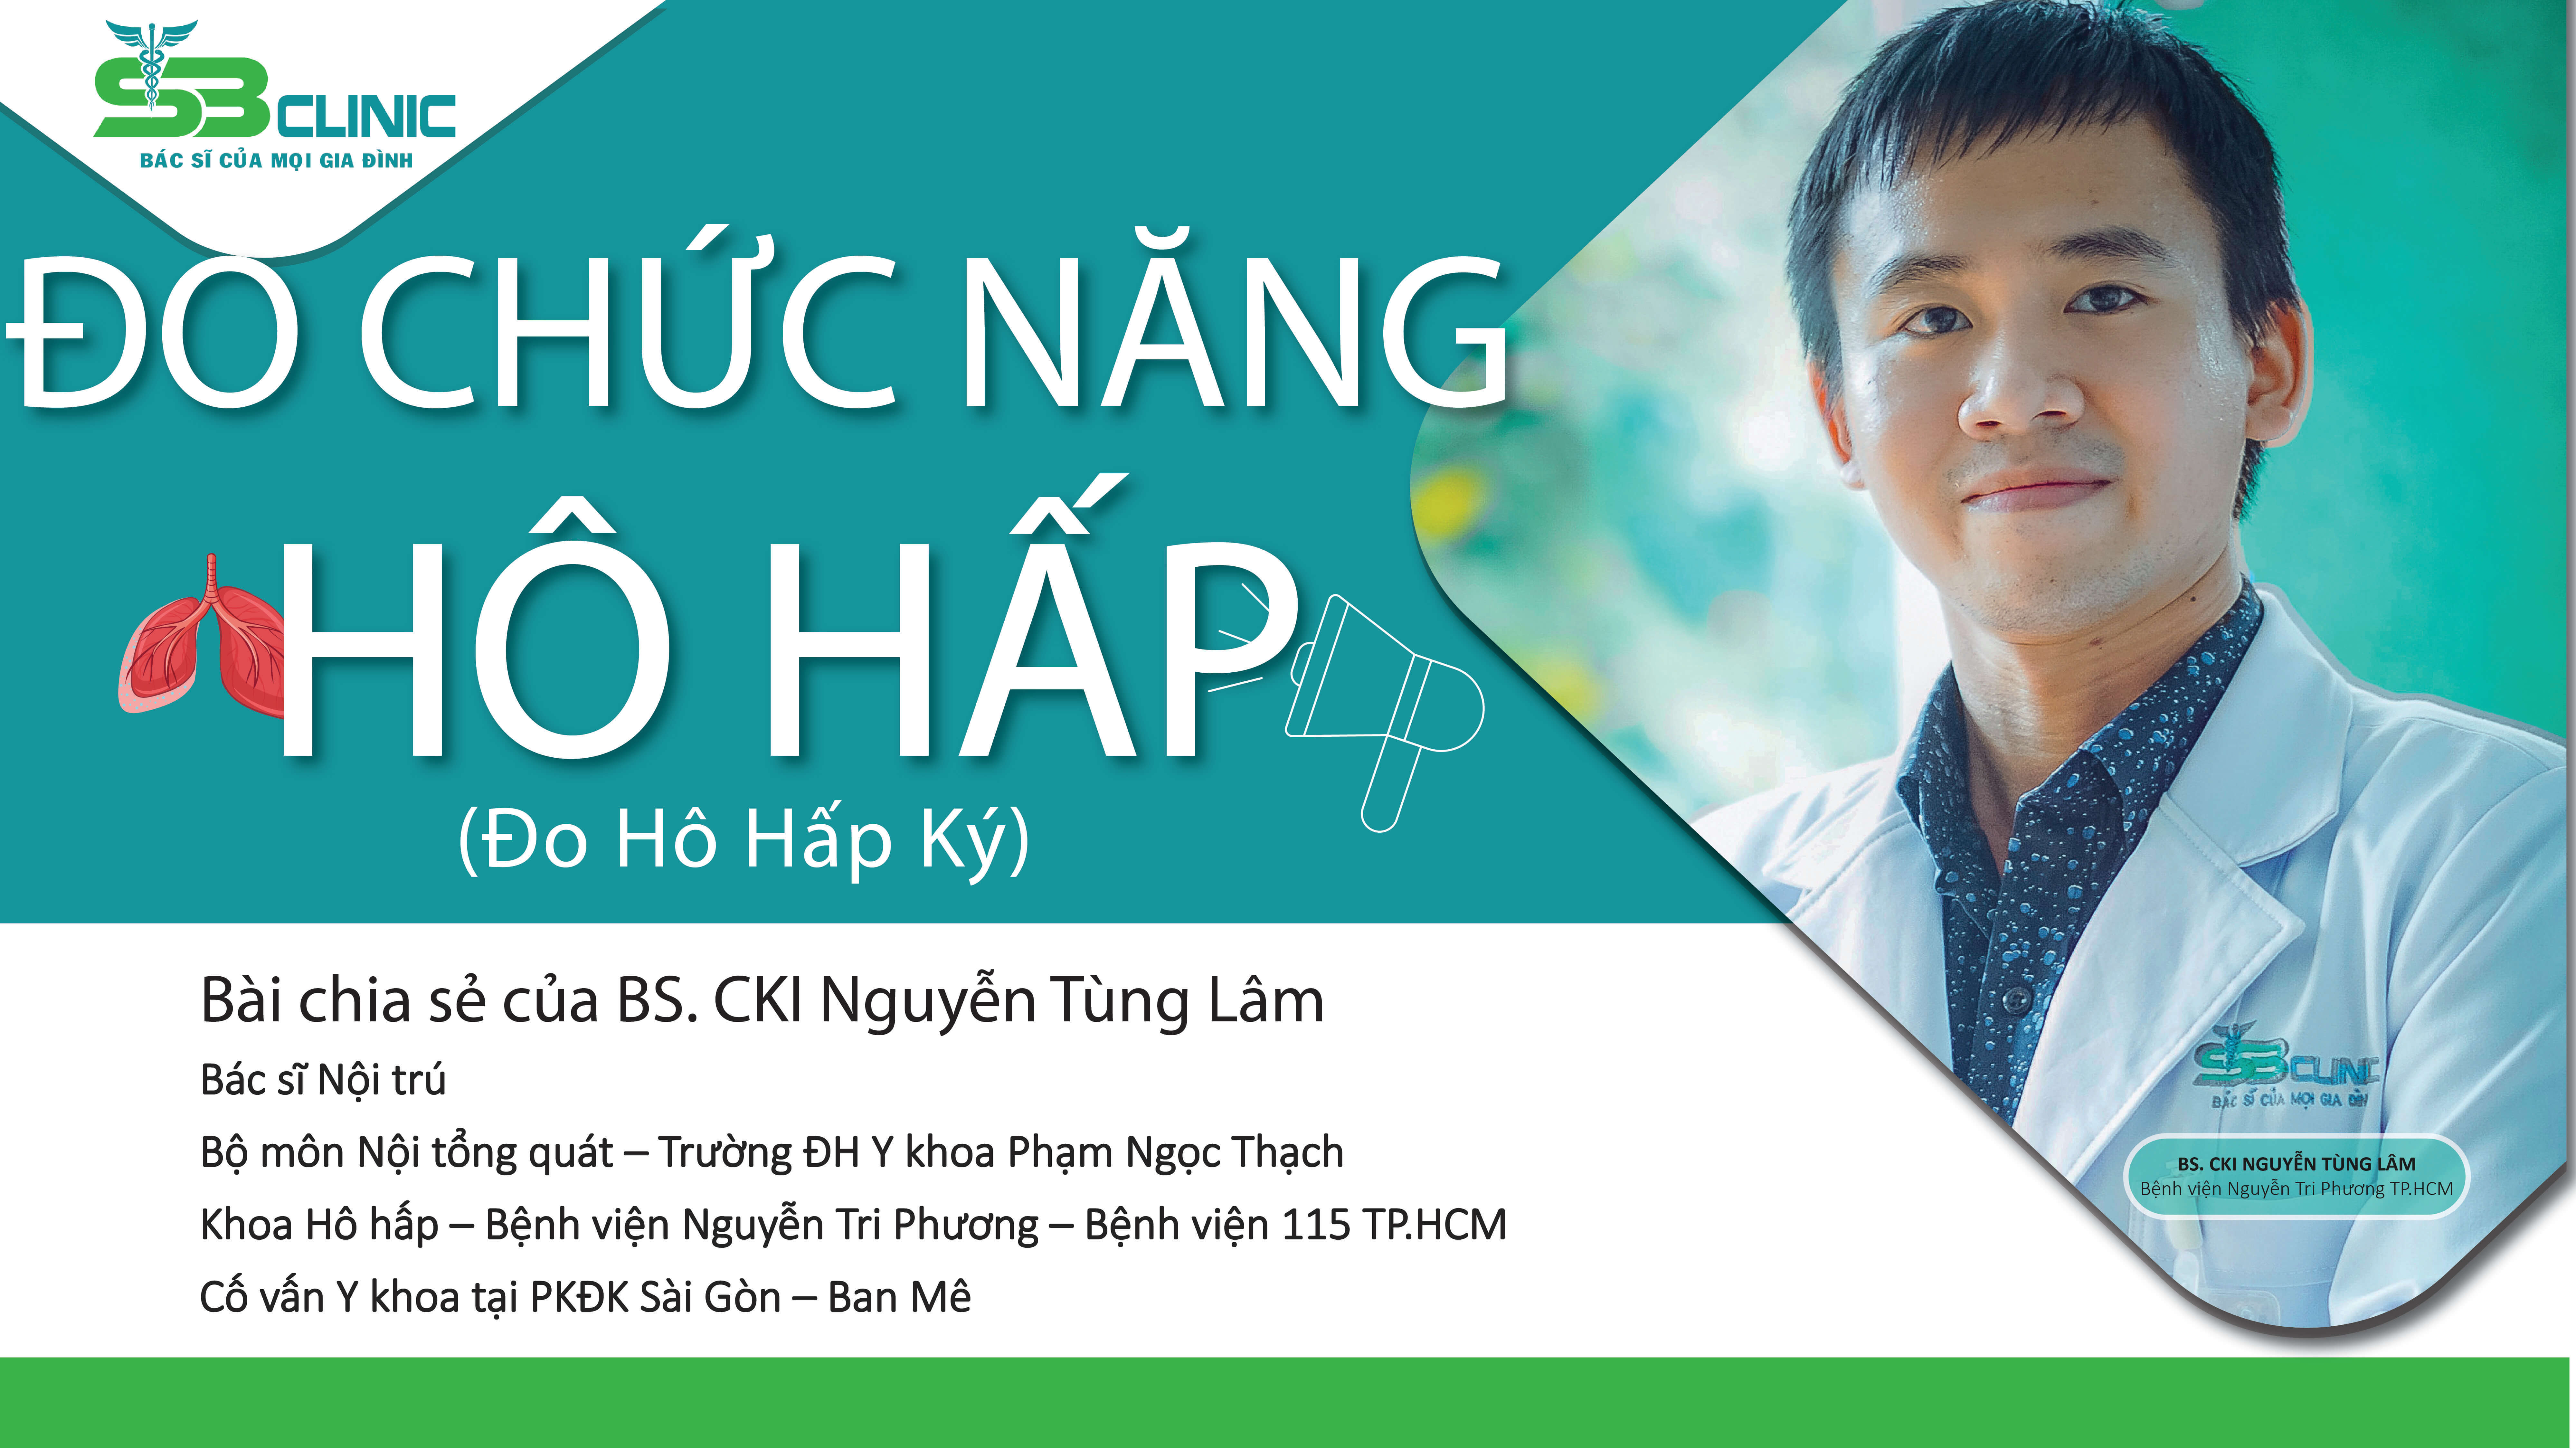 PKĐK Sài Gòn - Ban Mê triển khai đo hô hấp ký với sự hỗ trợ chuyên môn từ các cố vấn y khoa từ TP.HCM